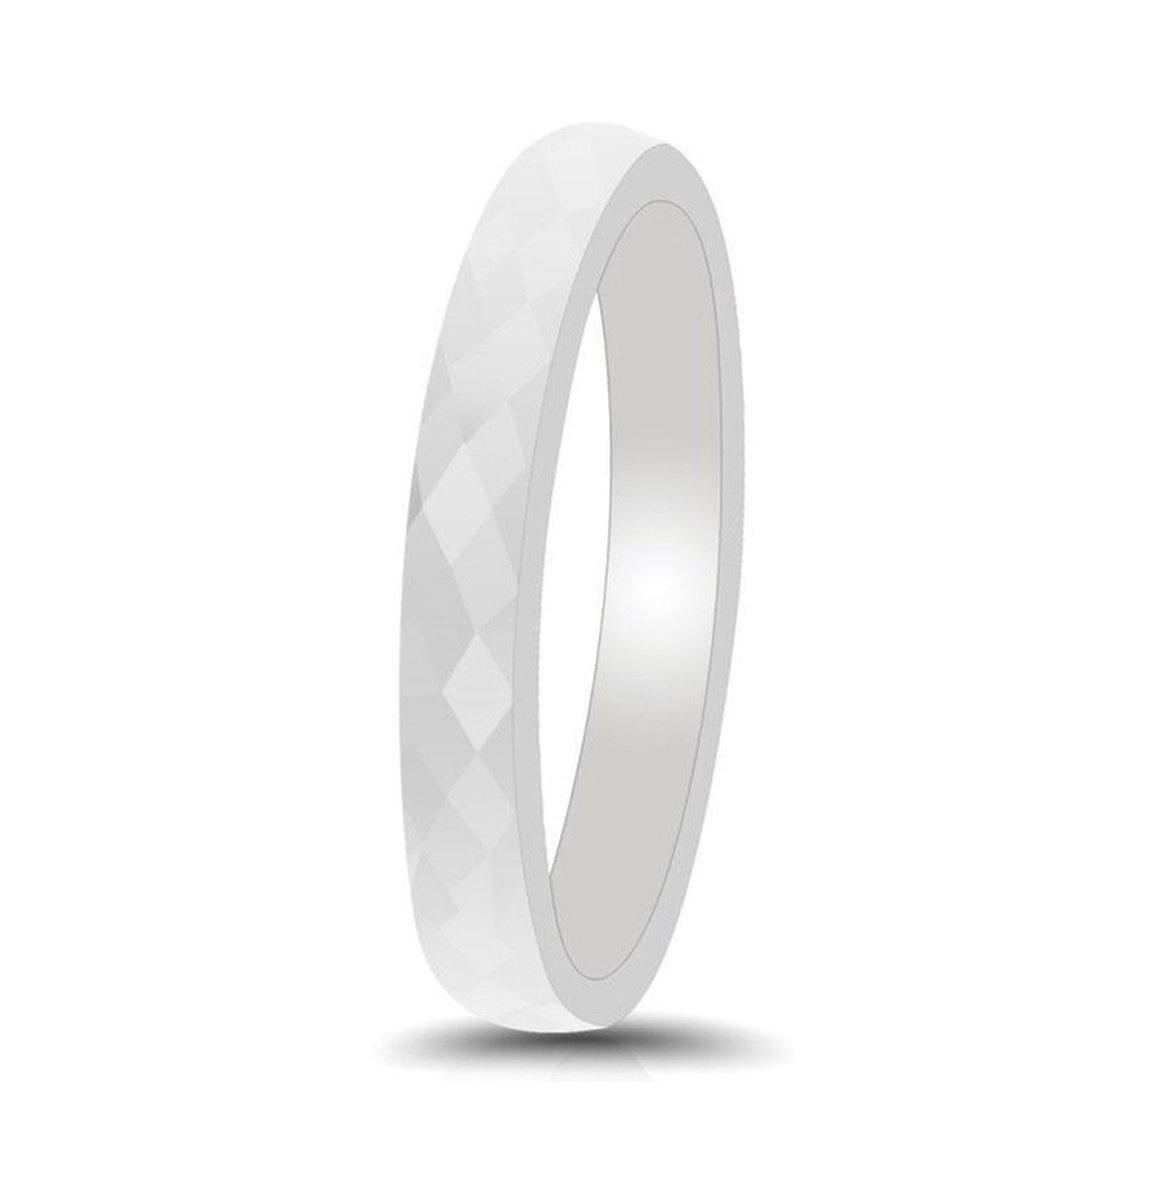 Witte ring keramisch - Hamerslag glanzende structuur Mauro Vinci Unisex ringen - met geschenkverpakking - maat 7